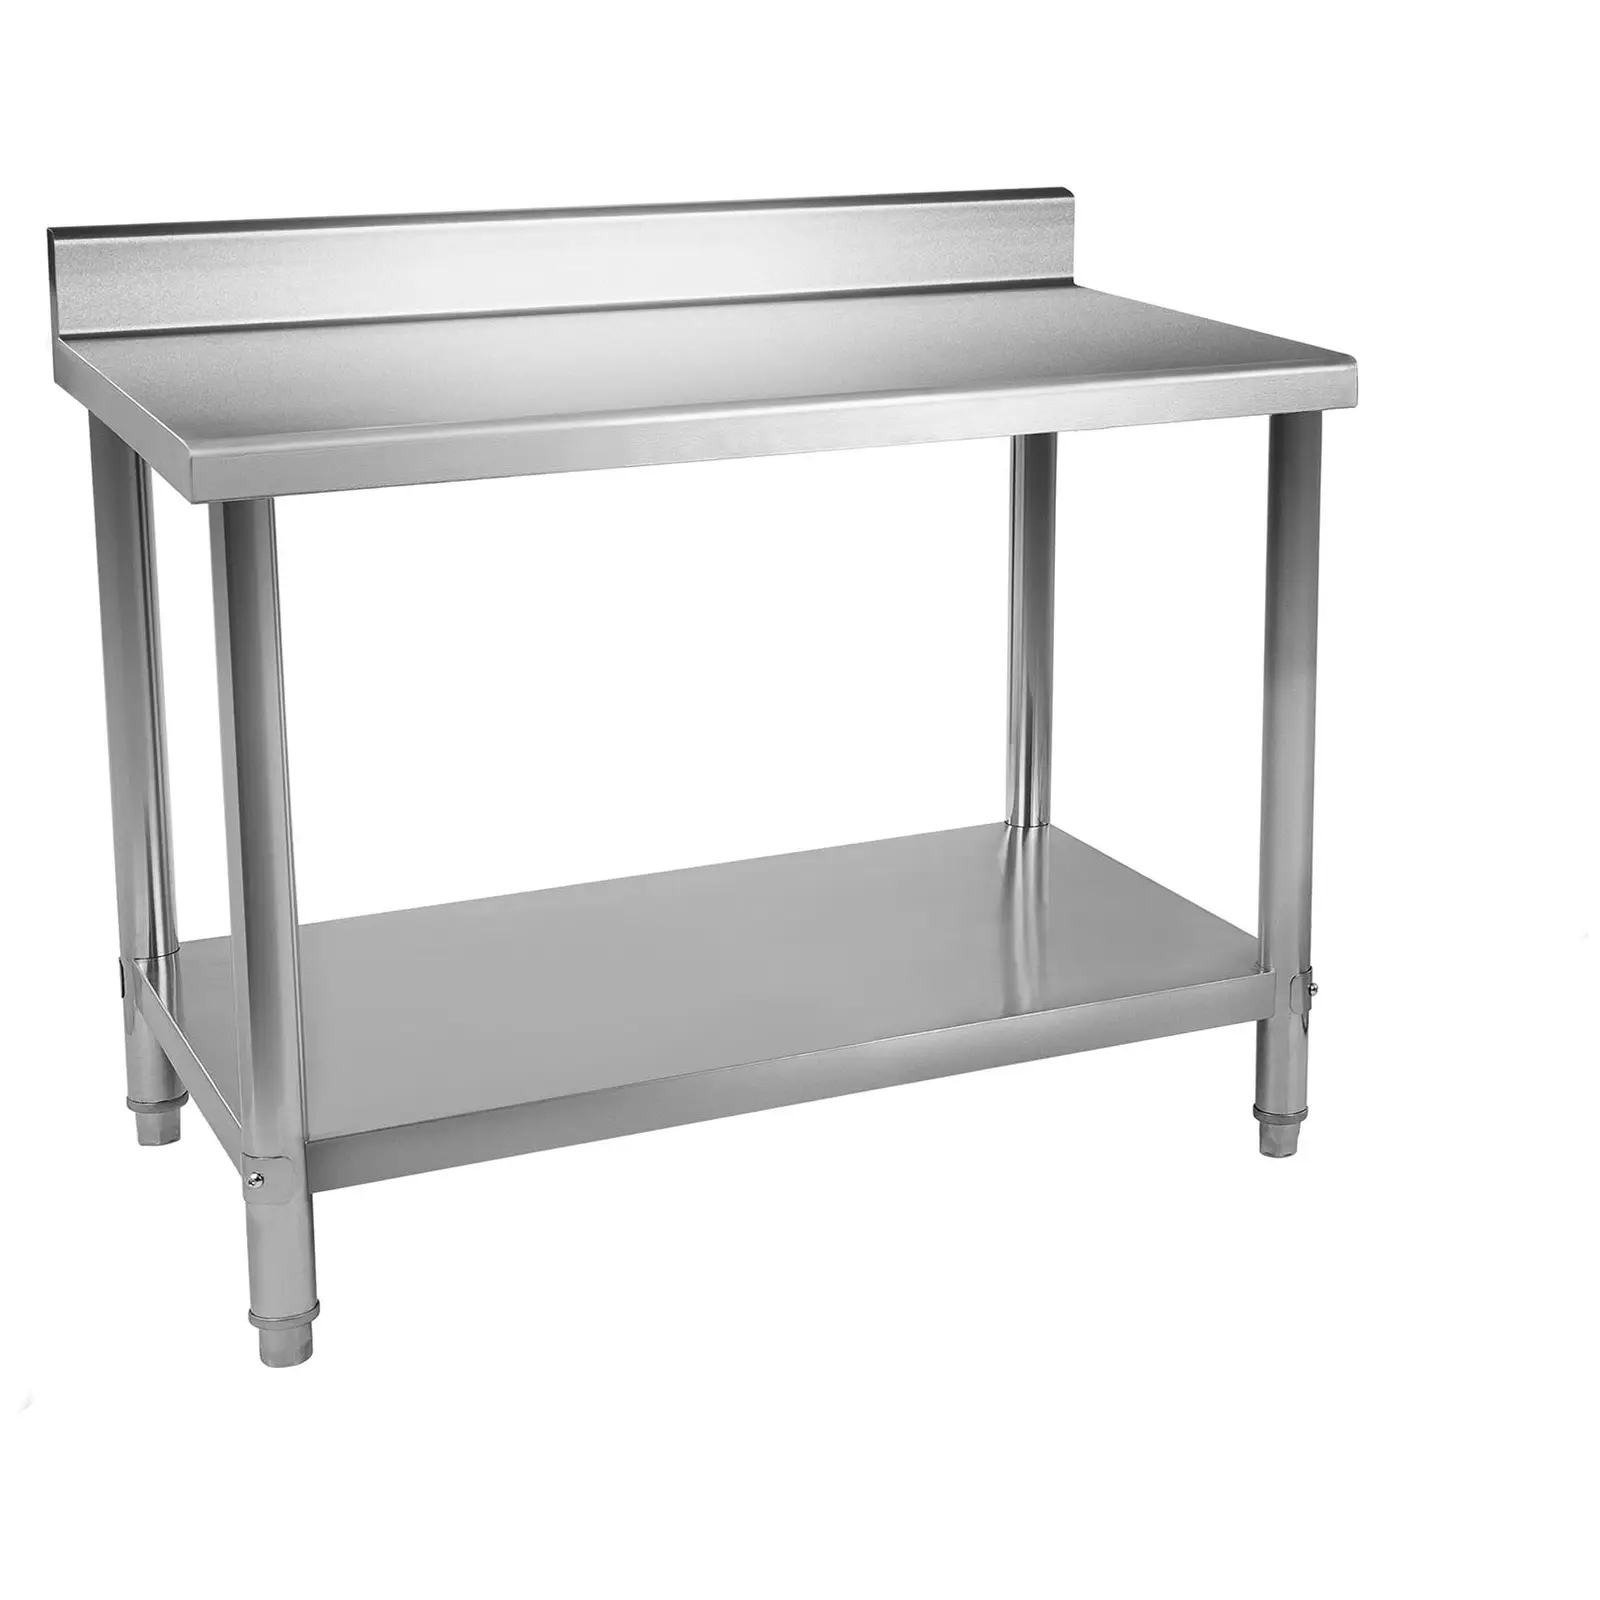 RST työpöytä - 120 x 60 cm - roiskelevy - 137 kg kantavuus